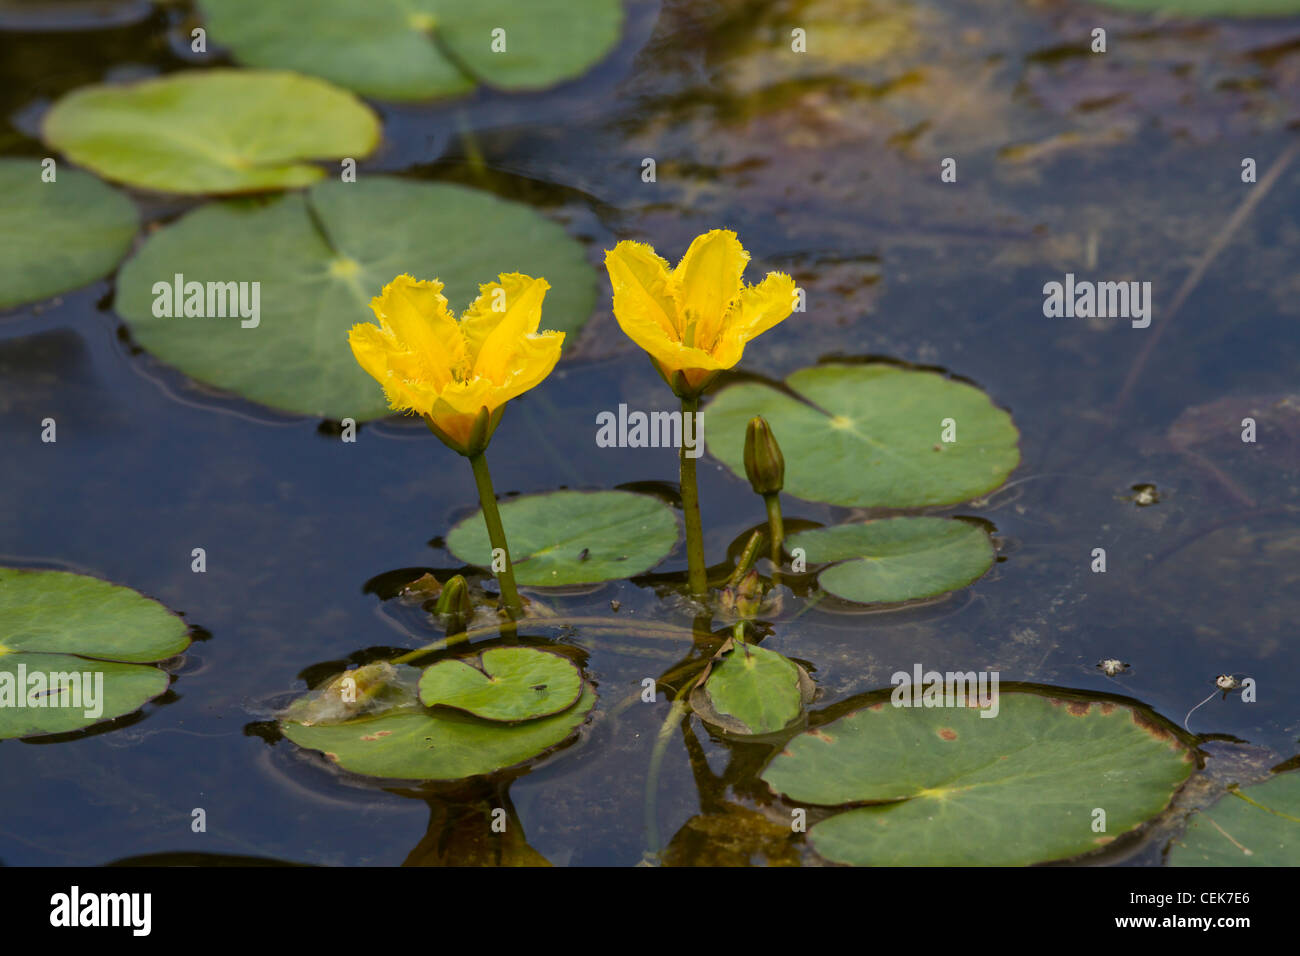 Europaeische Seekanne, Nymphoides peltata, fringed water-lily Stock Photo